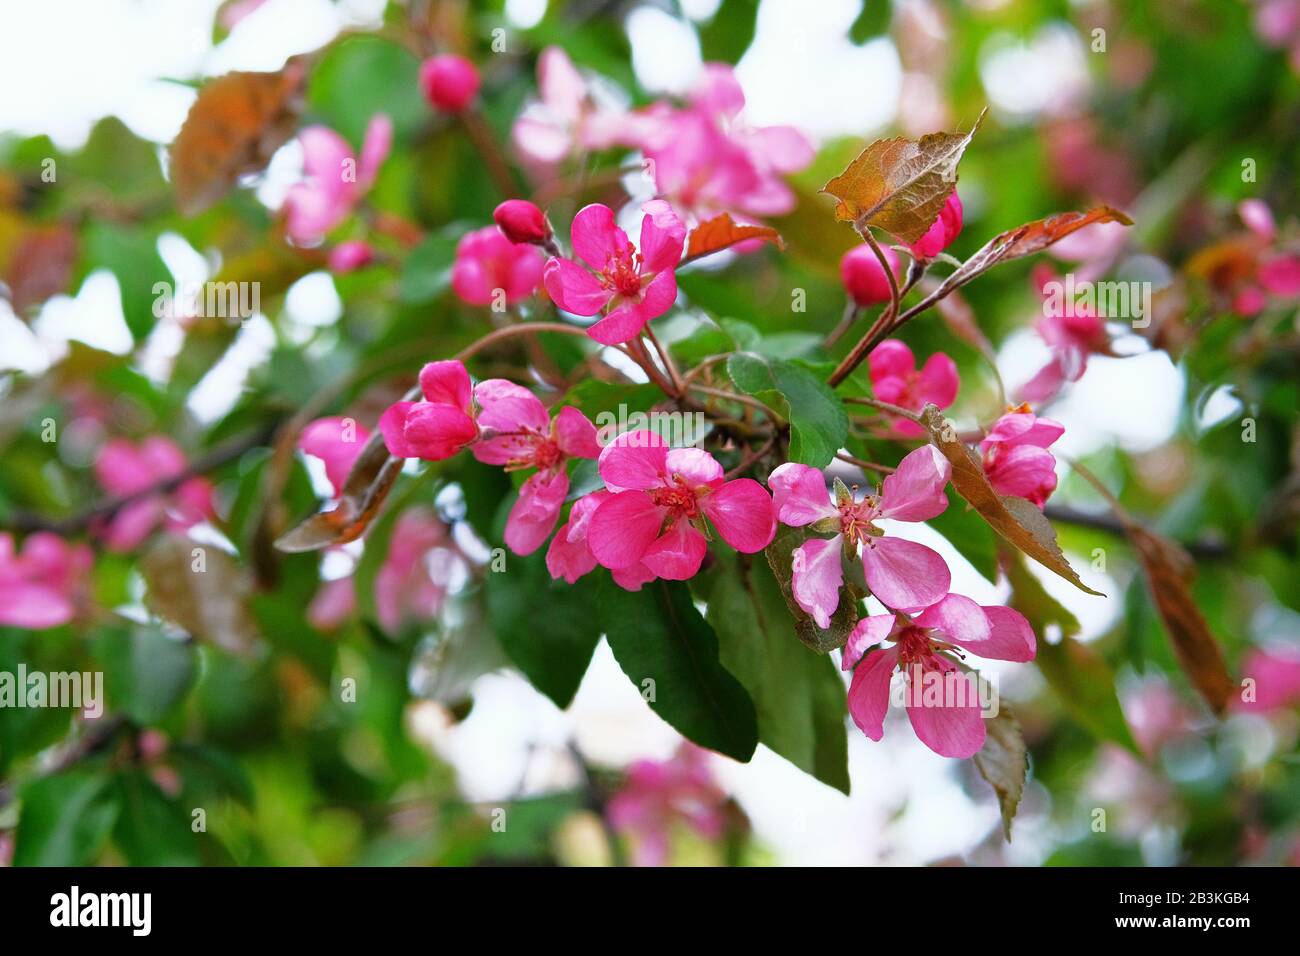 Pfelzbaum blüht mit rosafarbenen Kronblättern. Grußkarte für den Tag der Frauen. Blühender Park im Frühjahr. Malus floribunda, gebräuchlicher Name japanischer Blumenkrapp Stockfoto